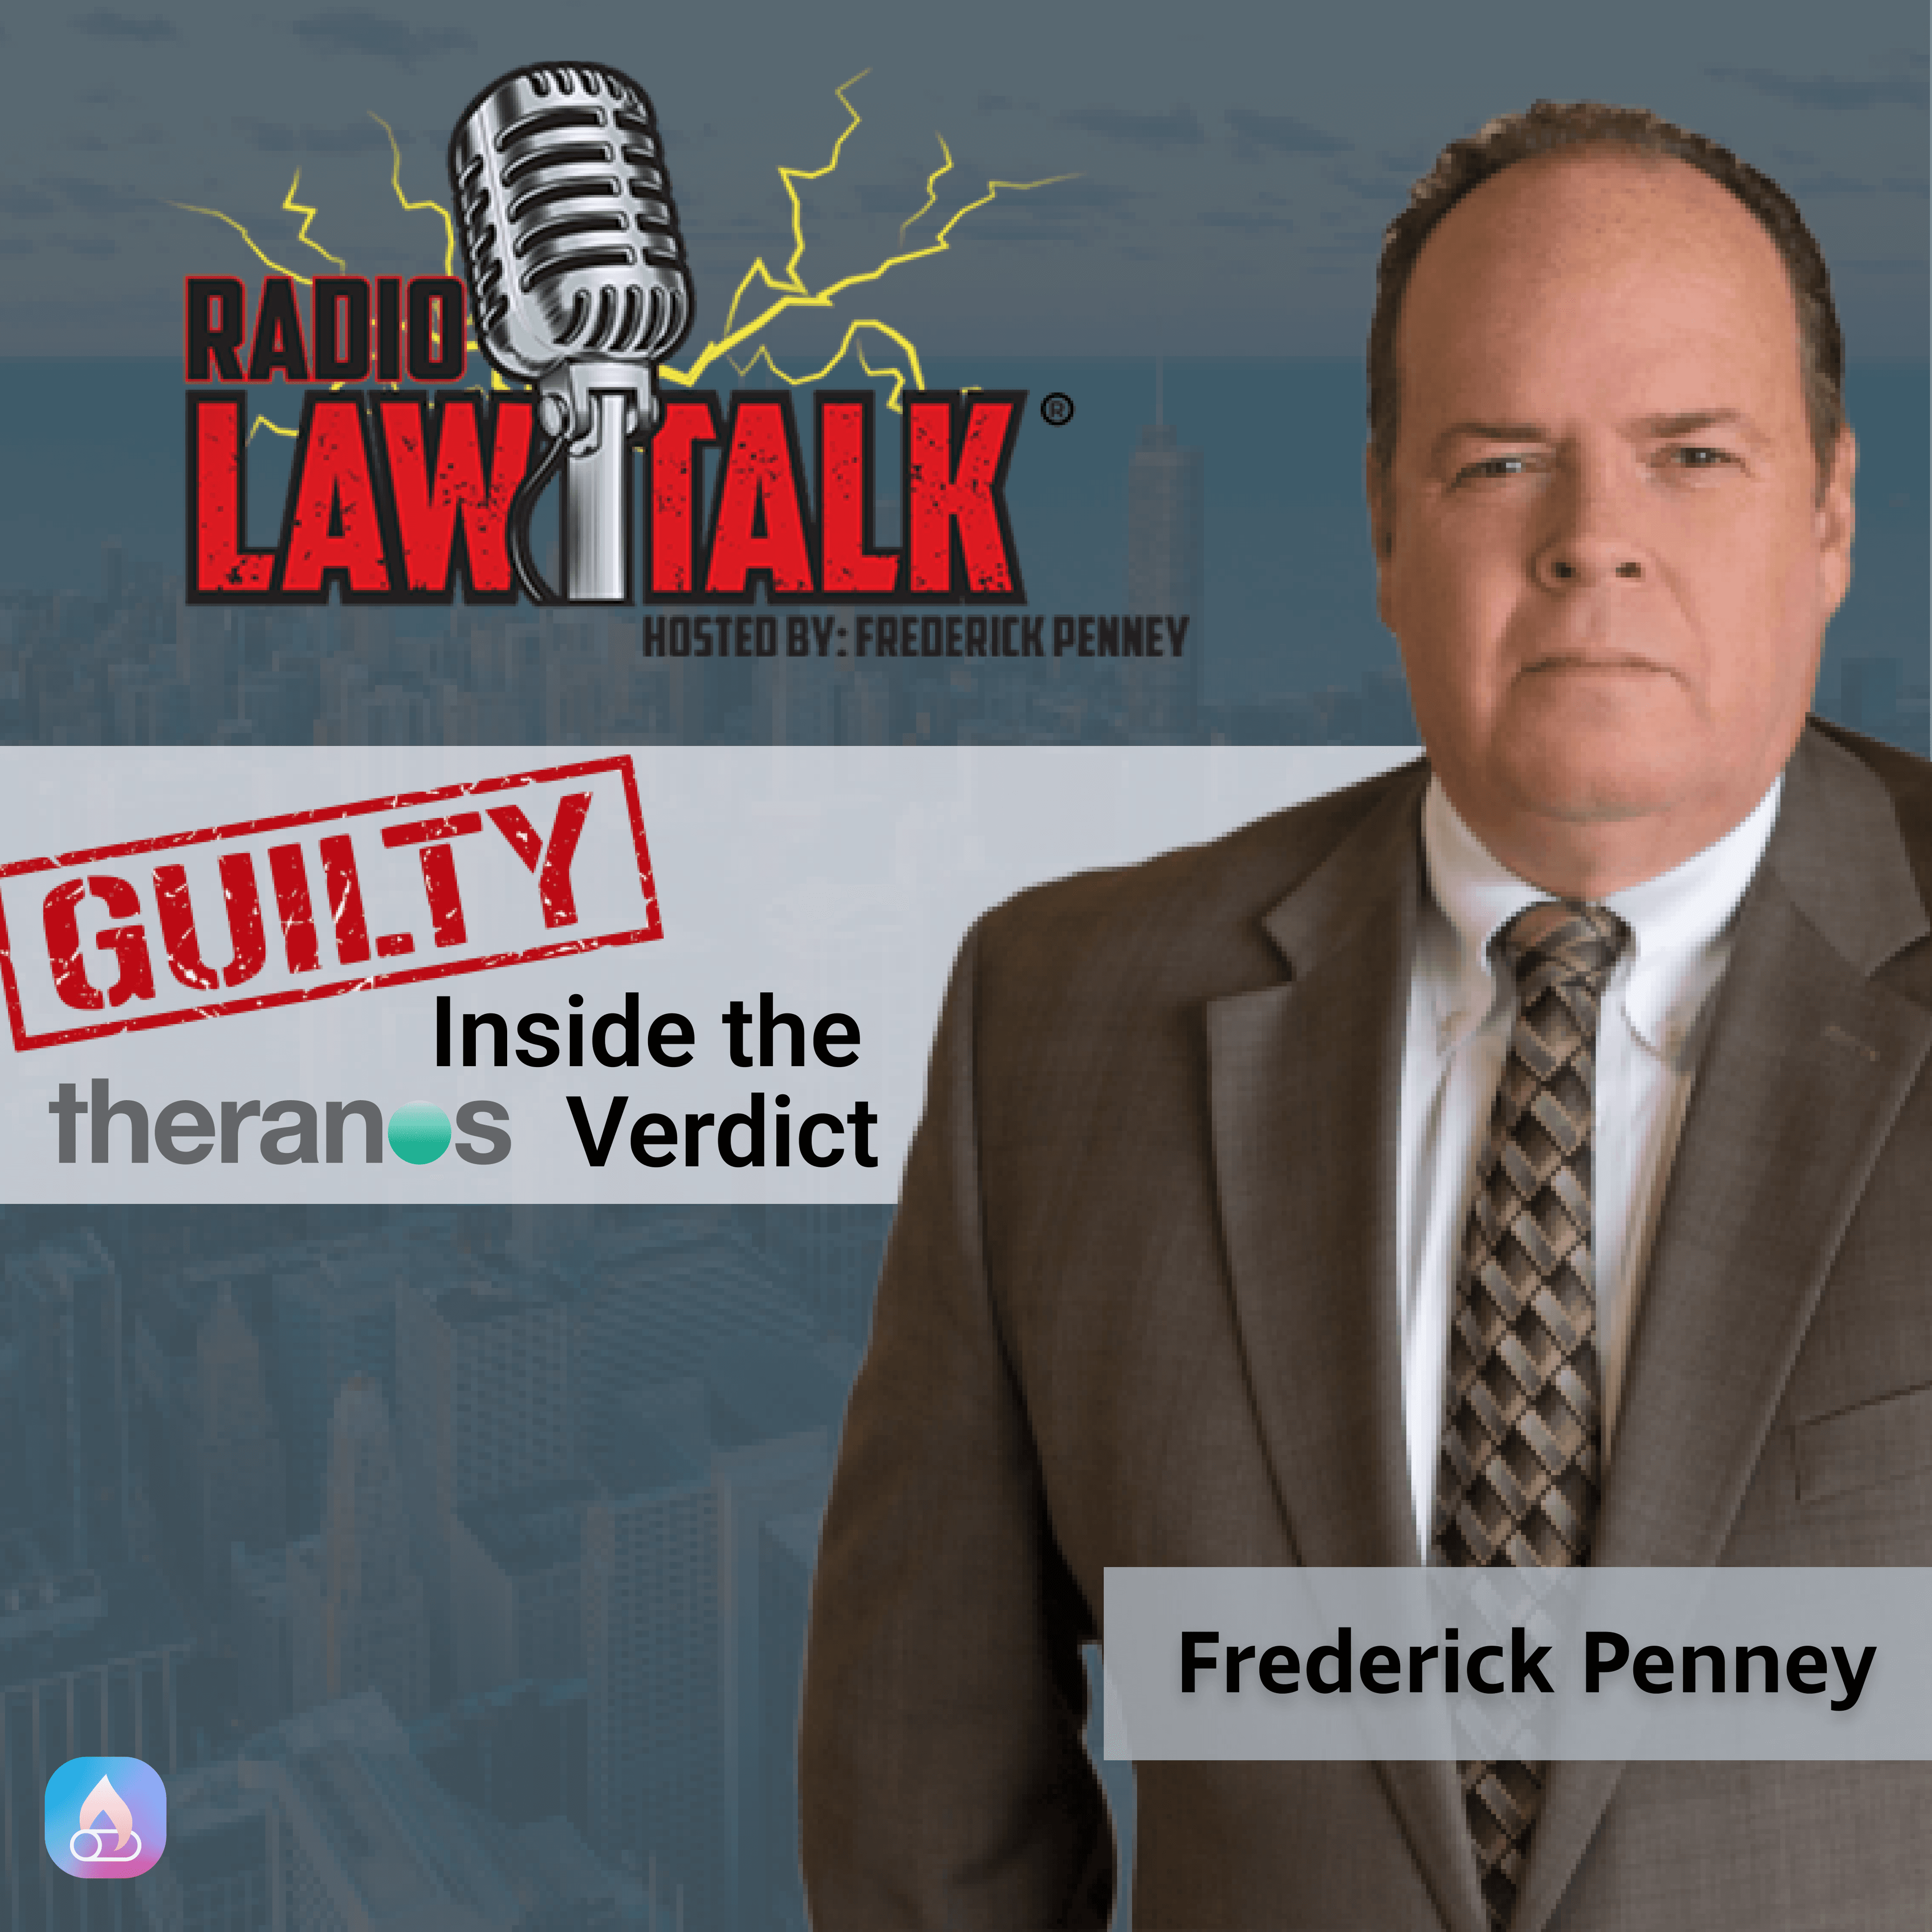 Radio Law Talk